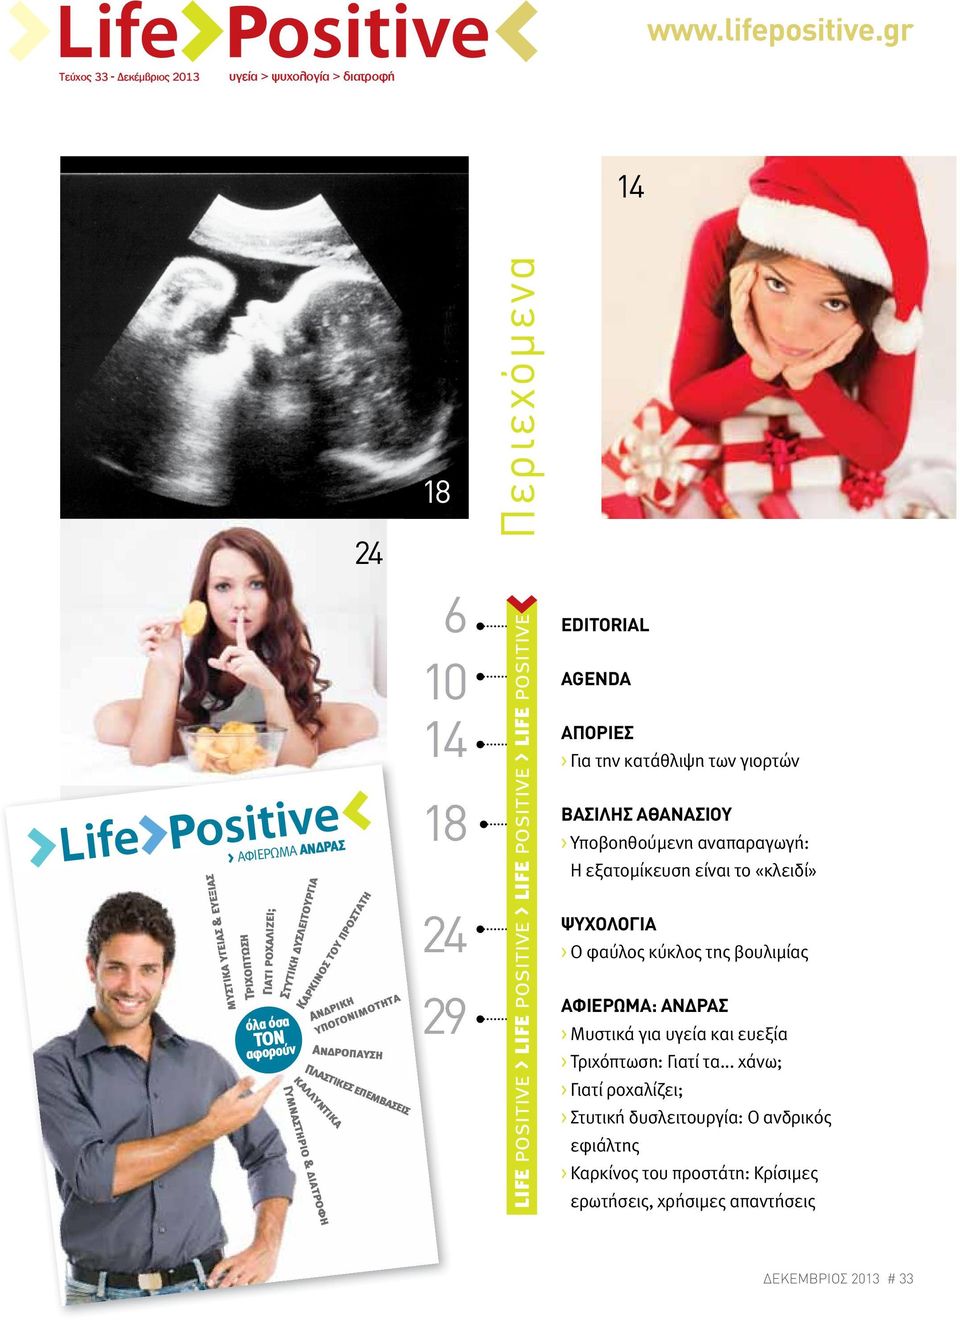 προστατη Ανδρική υπογονιµοτητα Ανδροπαυση Πλαστικες επεµβασεις καλλυντικα Γυµναστηριο & διατροφη 18 6 10 14 18 24 29 Περιεχόµενα life positive > life positive > life positive > life positive > life